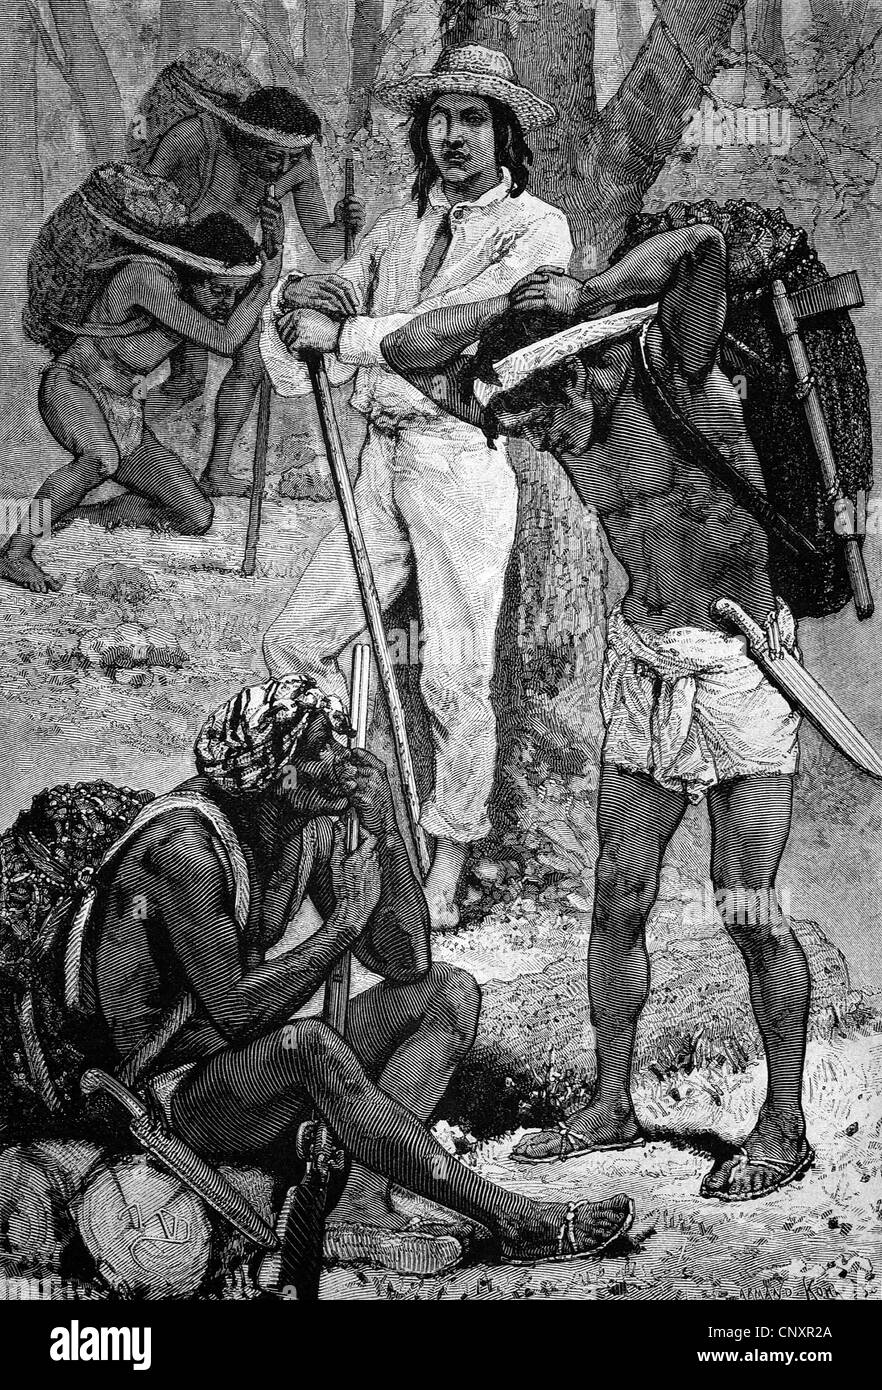 Cueilleurs de caoutchouc de l'Inde, la Nouvelle Grenade, l'Amérique du Sud, la gravure de 1883 historique Banque D'Images